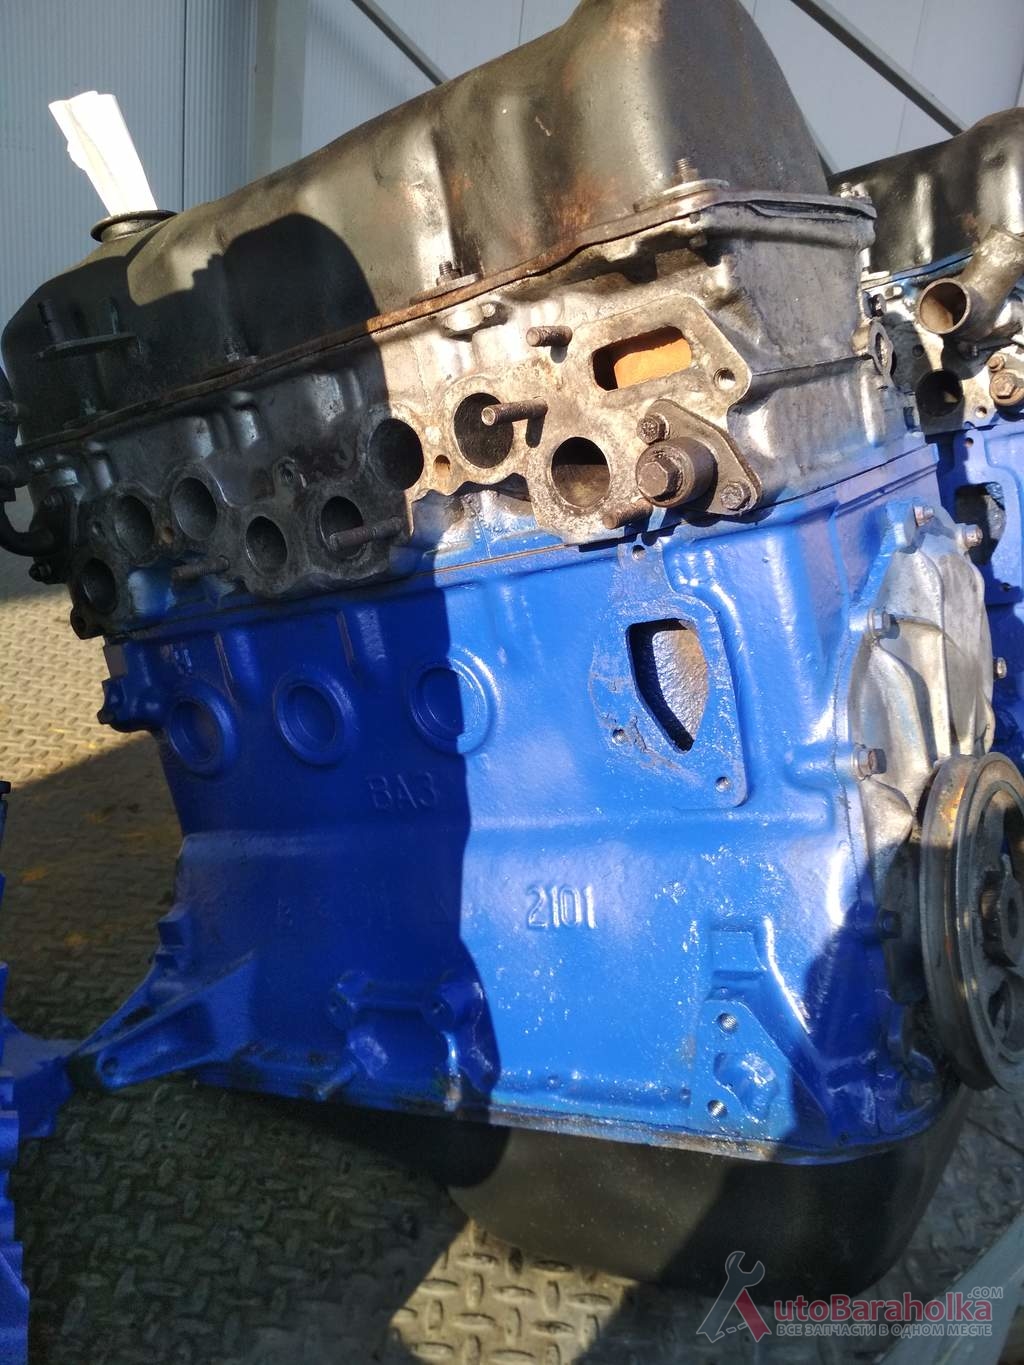 Продам Двигатель ВАЗ 2101 2103 21011 2106 2121 21213 из Словакии. проверенный. высокая компрессия. Гарантия Херсон